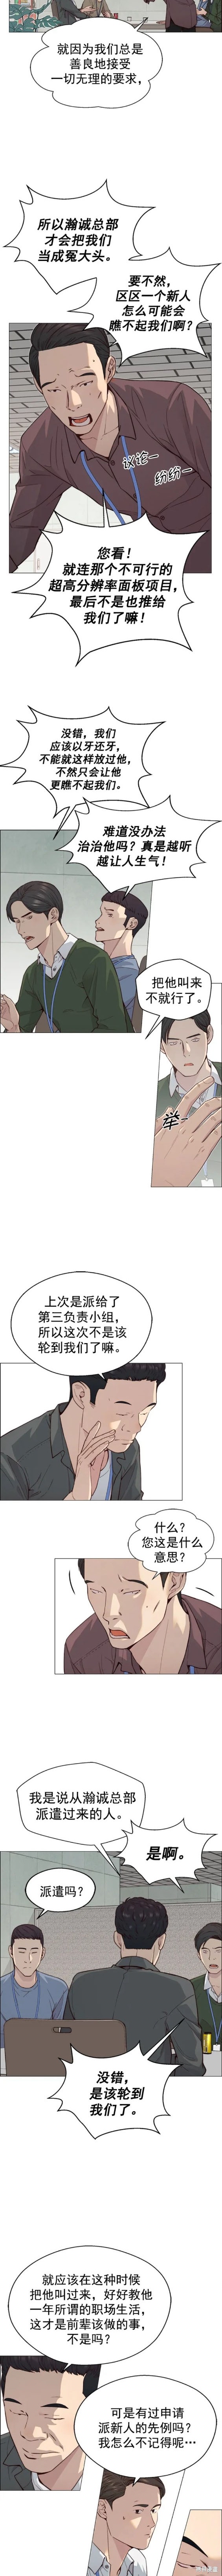 男子汉漫画,第144话2图